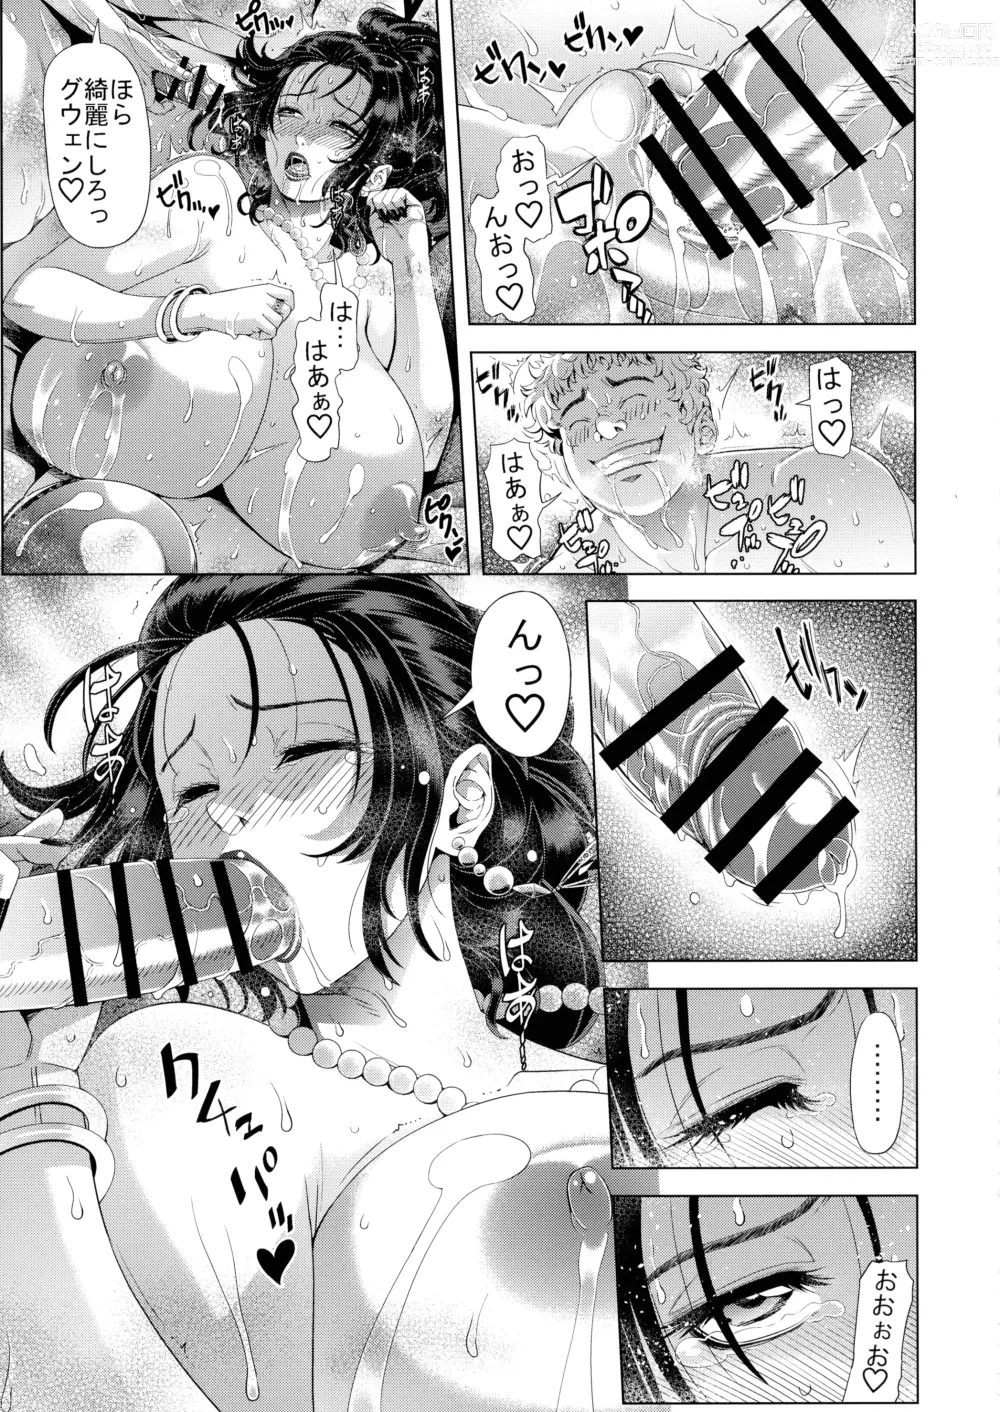 Page 23 of doujinshi Kyouki no Oukoku San no Shou